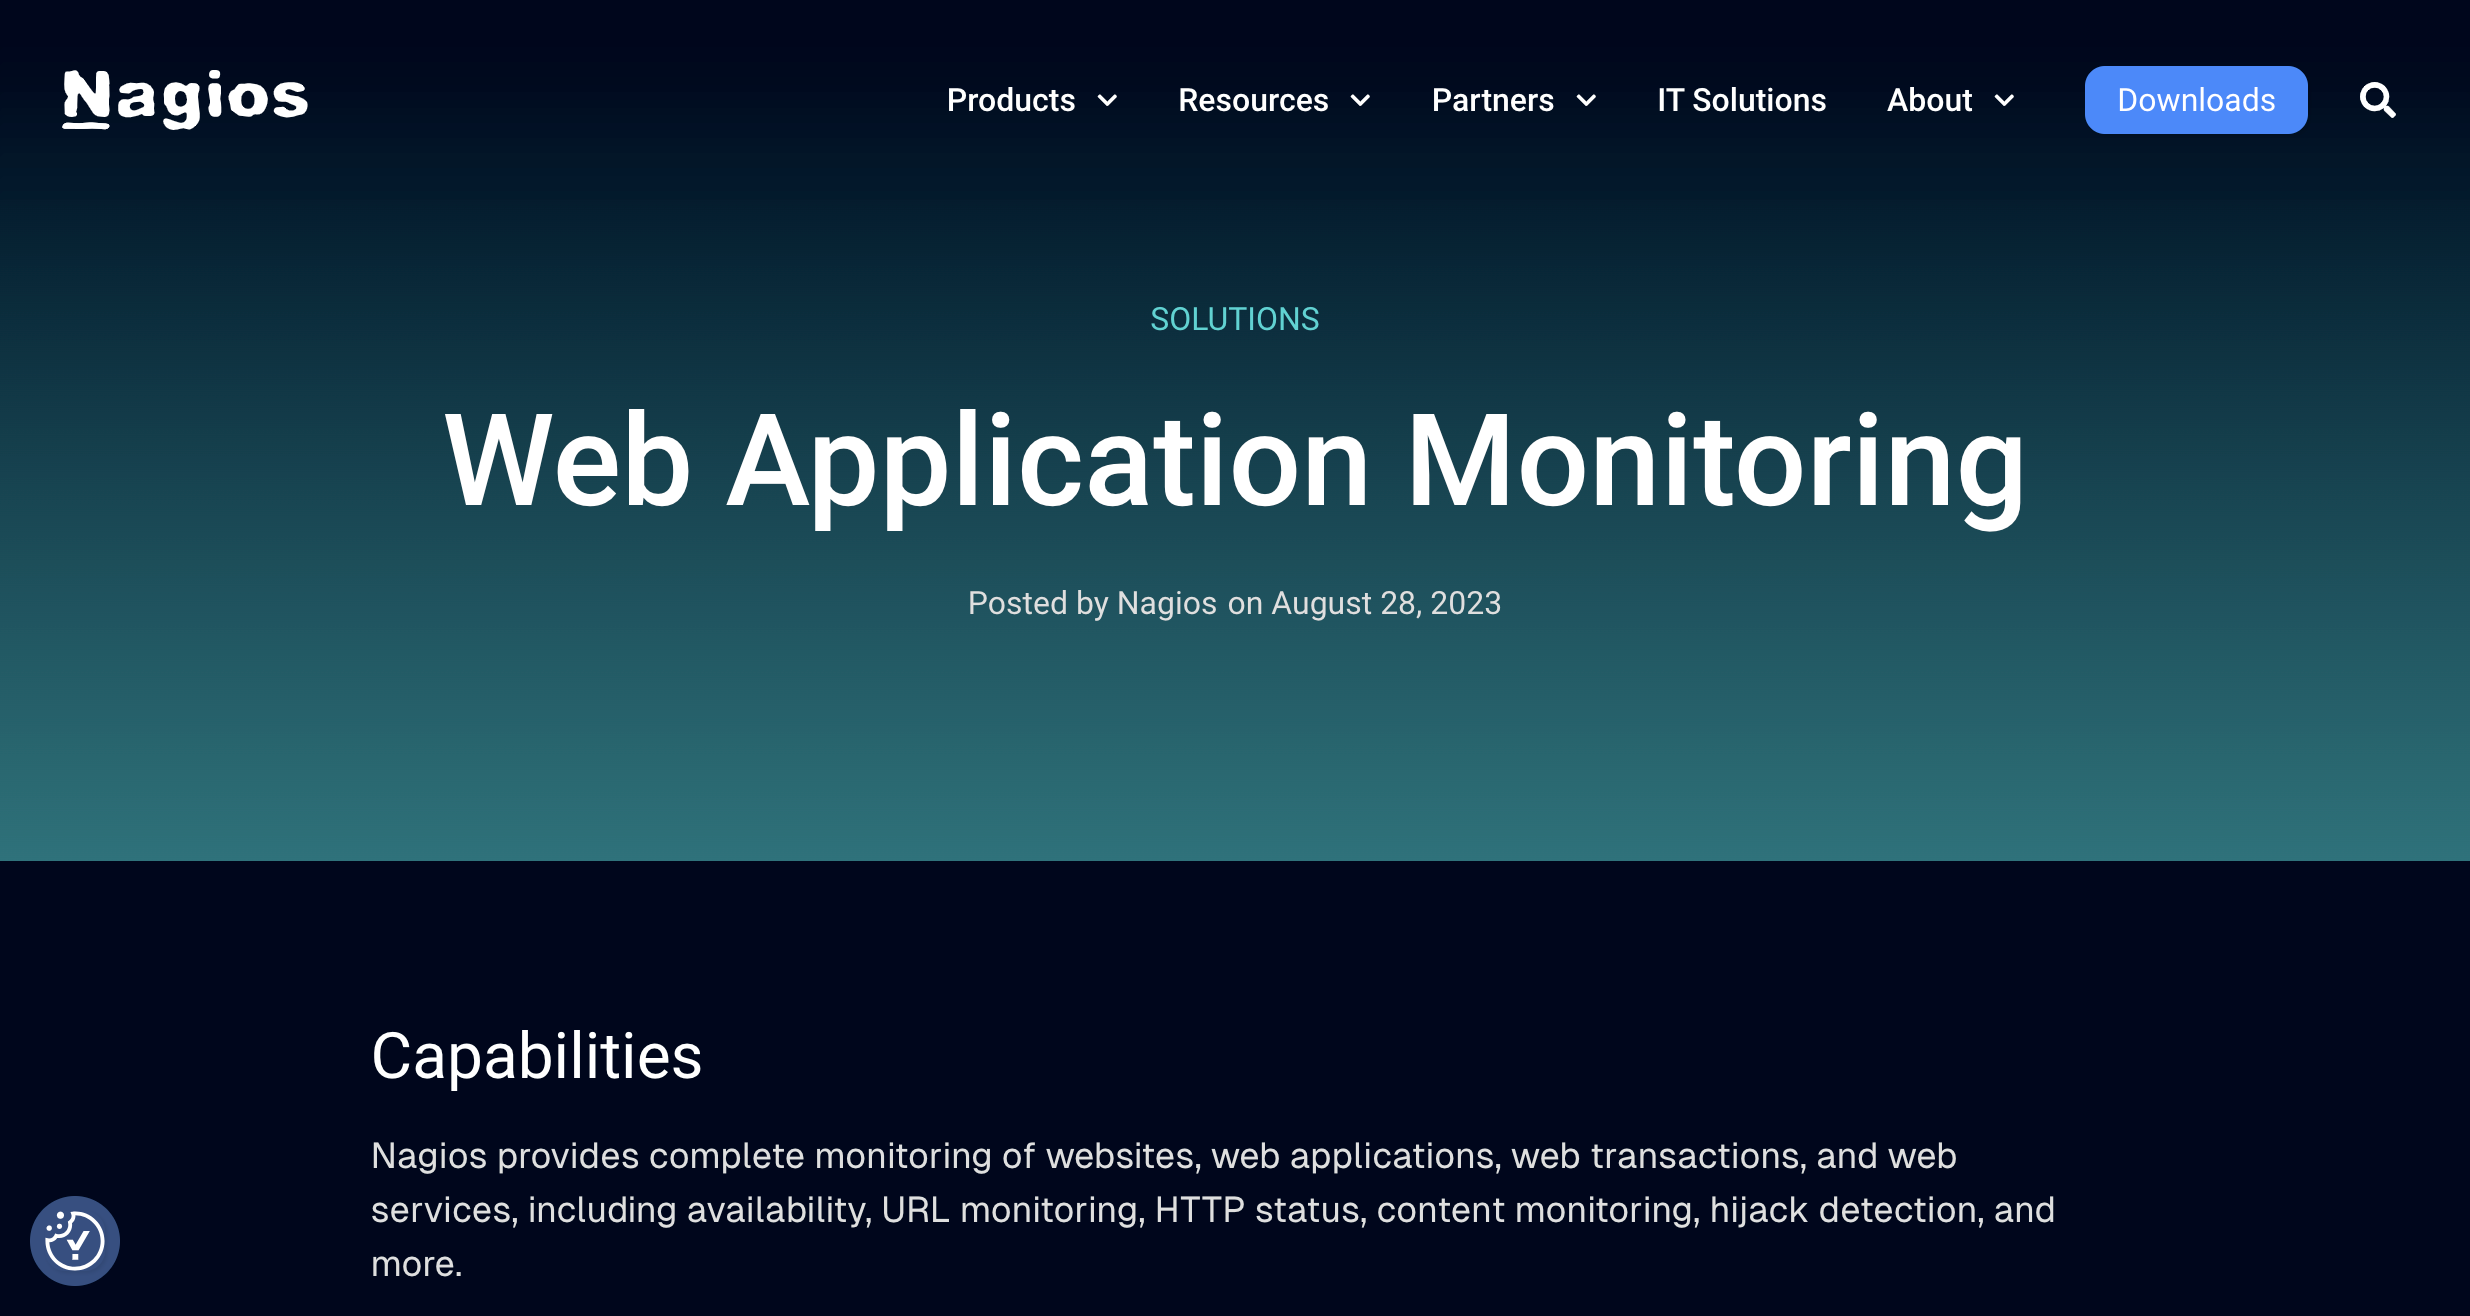 Nagios web application monitoring